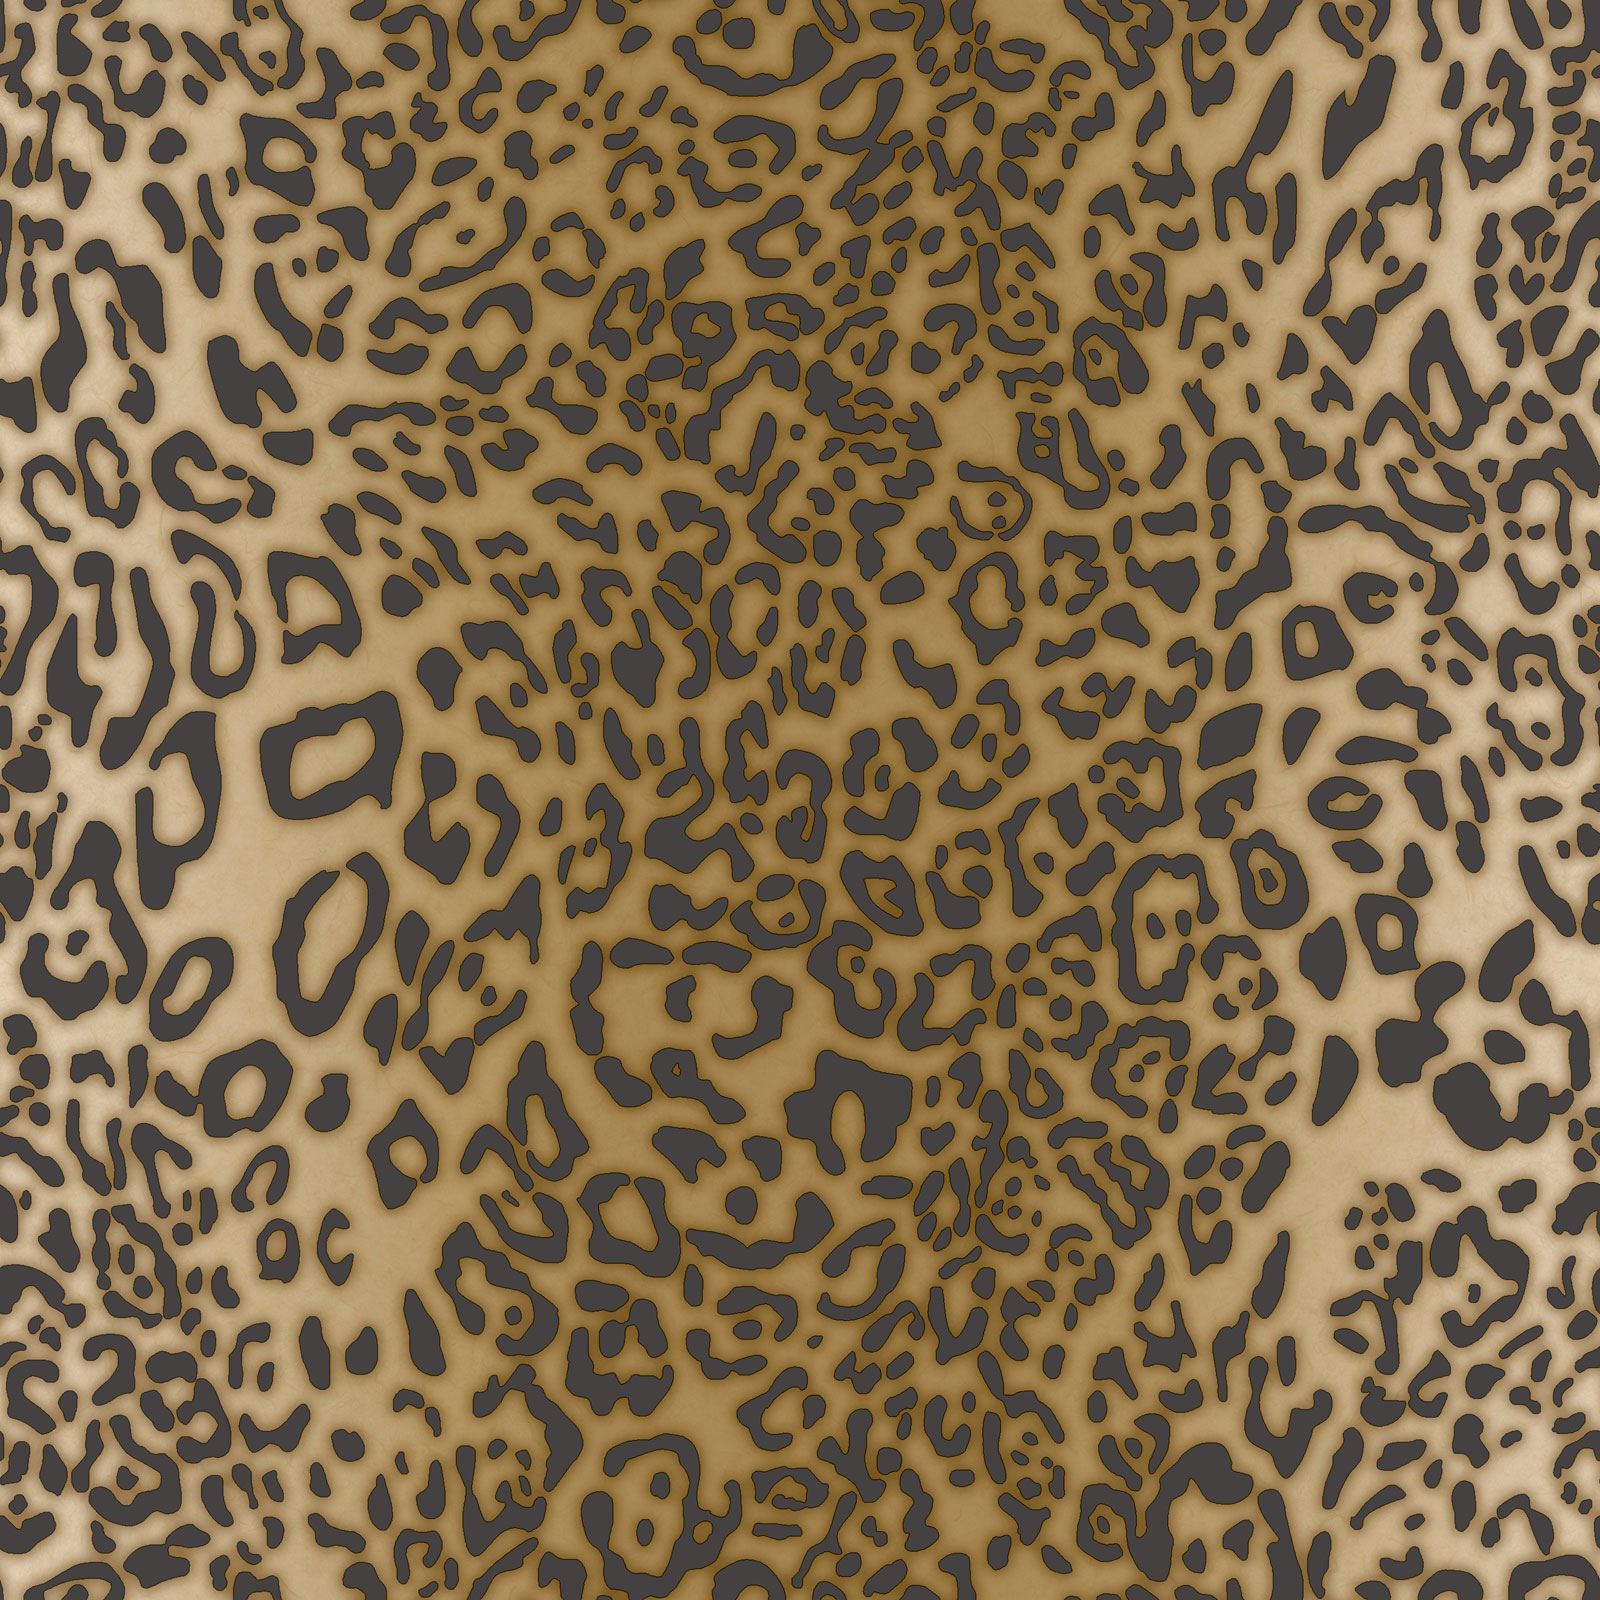 Animal Print Wallpaper Wall Decor Tiger Leopard Zebra - Leopard Print - HD Wallpaper 